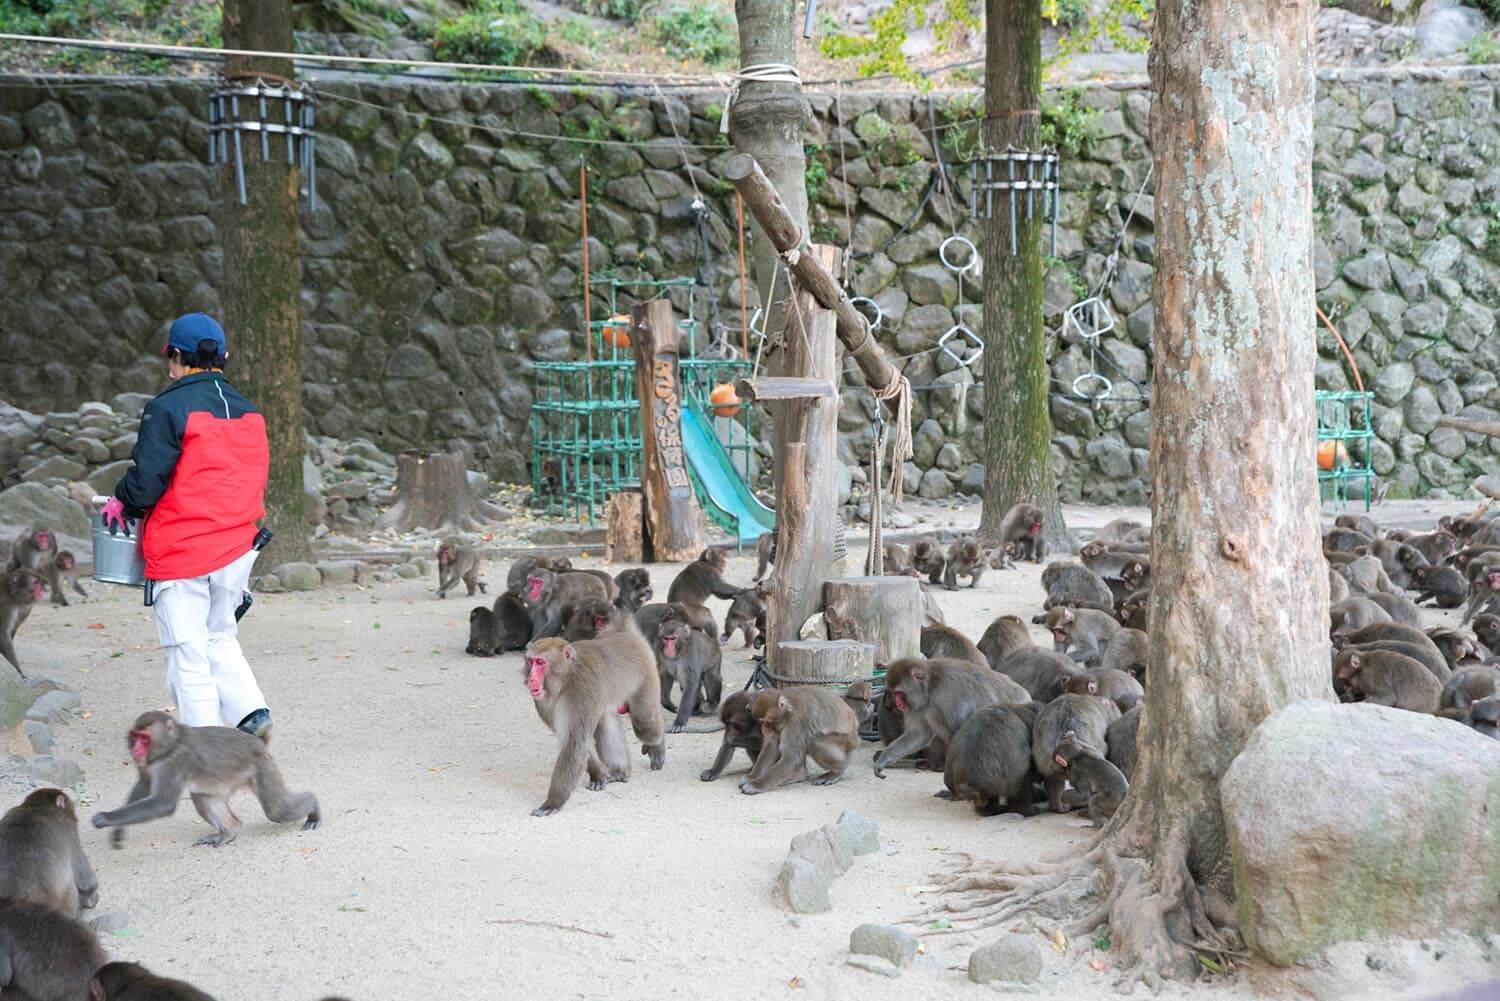 30分おきにやってくるエサのタイミングで、多くの猿が集まってくる